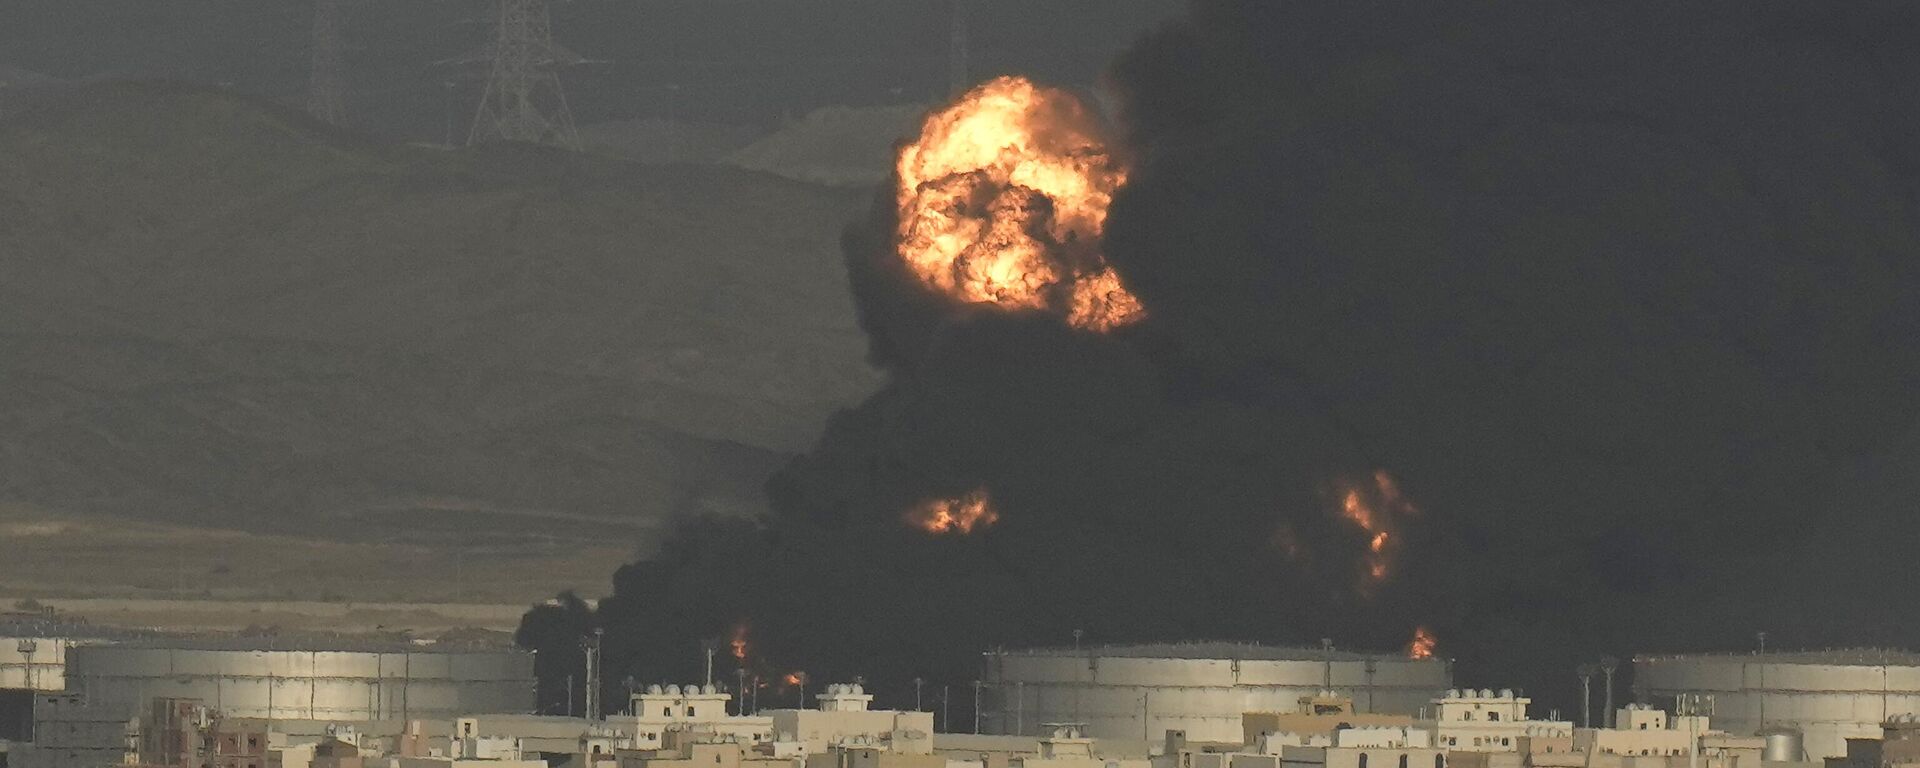 Uma nuvem de fumaça sobe de um depósito de petróleo em chamas em Jidá, Arábia Saudita, 25 de março de 2022 - Sputnik Brasil, 1920, 25.03.2022